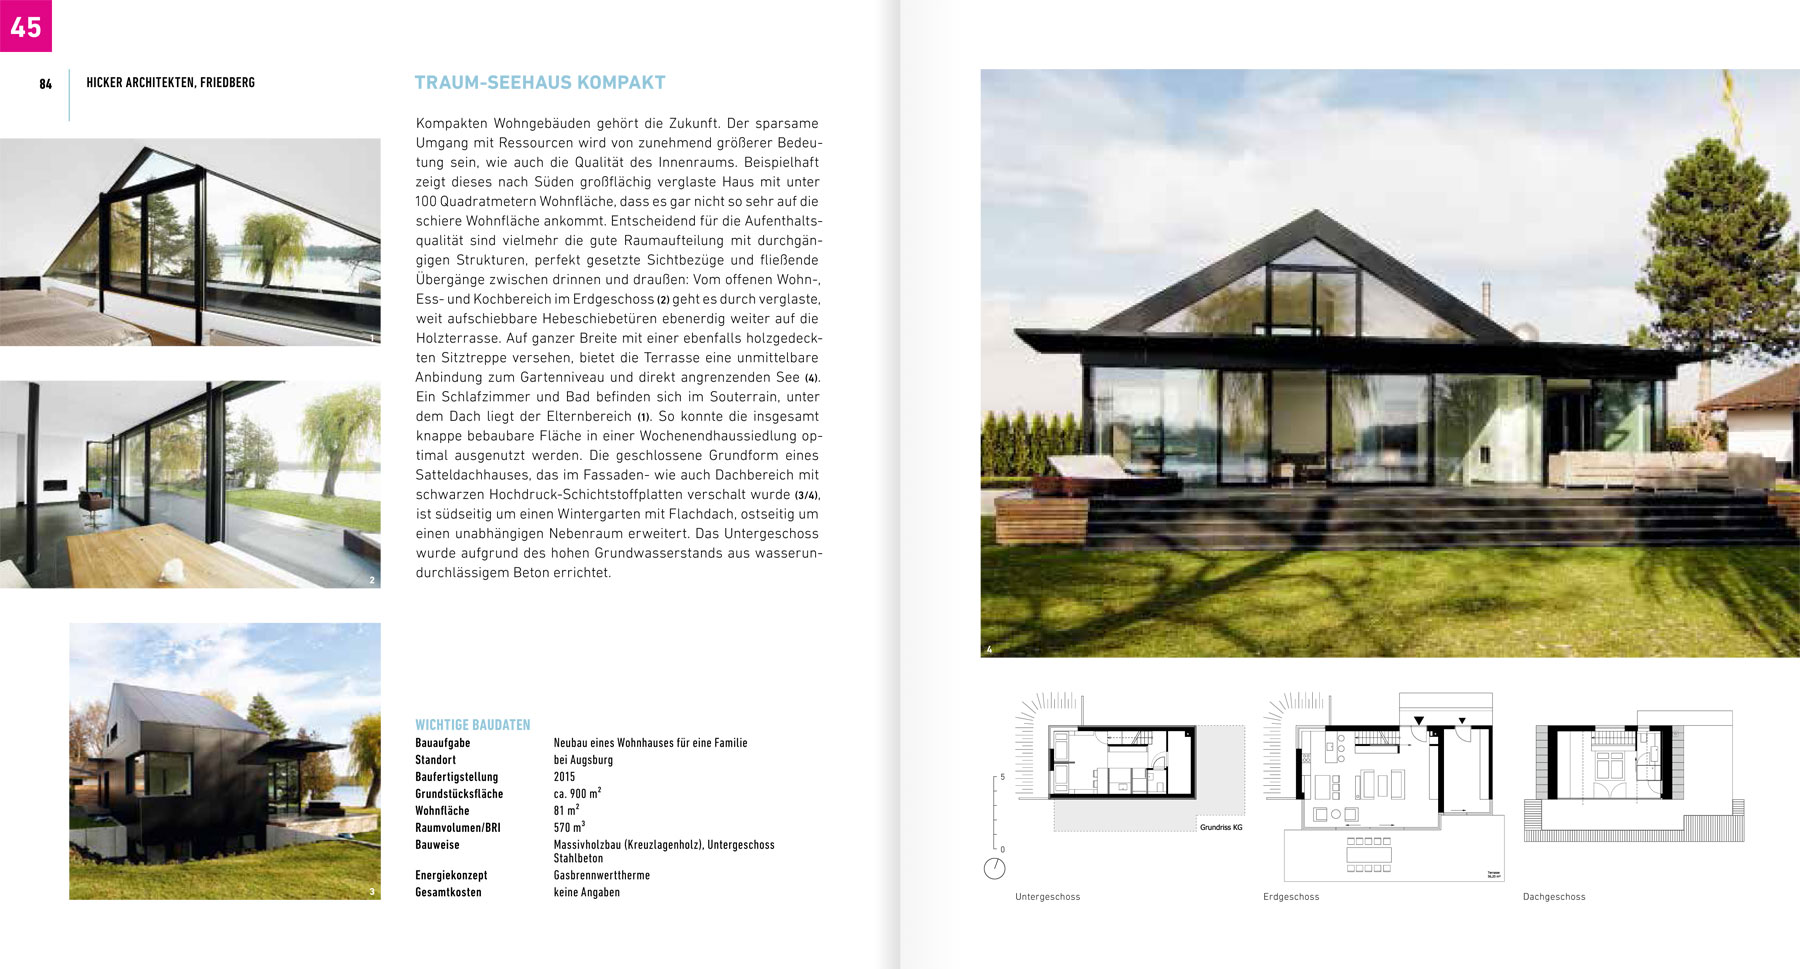 Hicker architekten - Haus am See II  im Buch "100 TOP Häuser" 2020 von Thomas Drexel